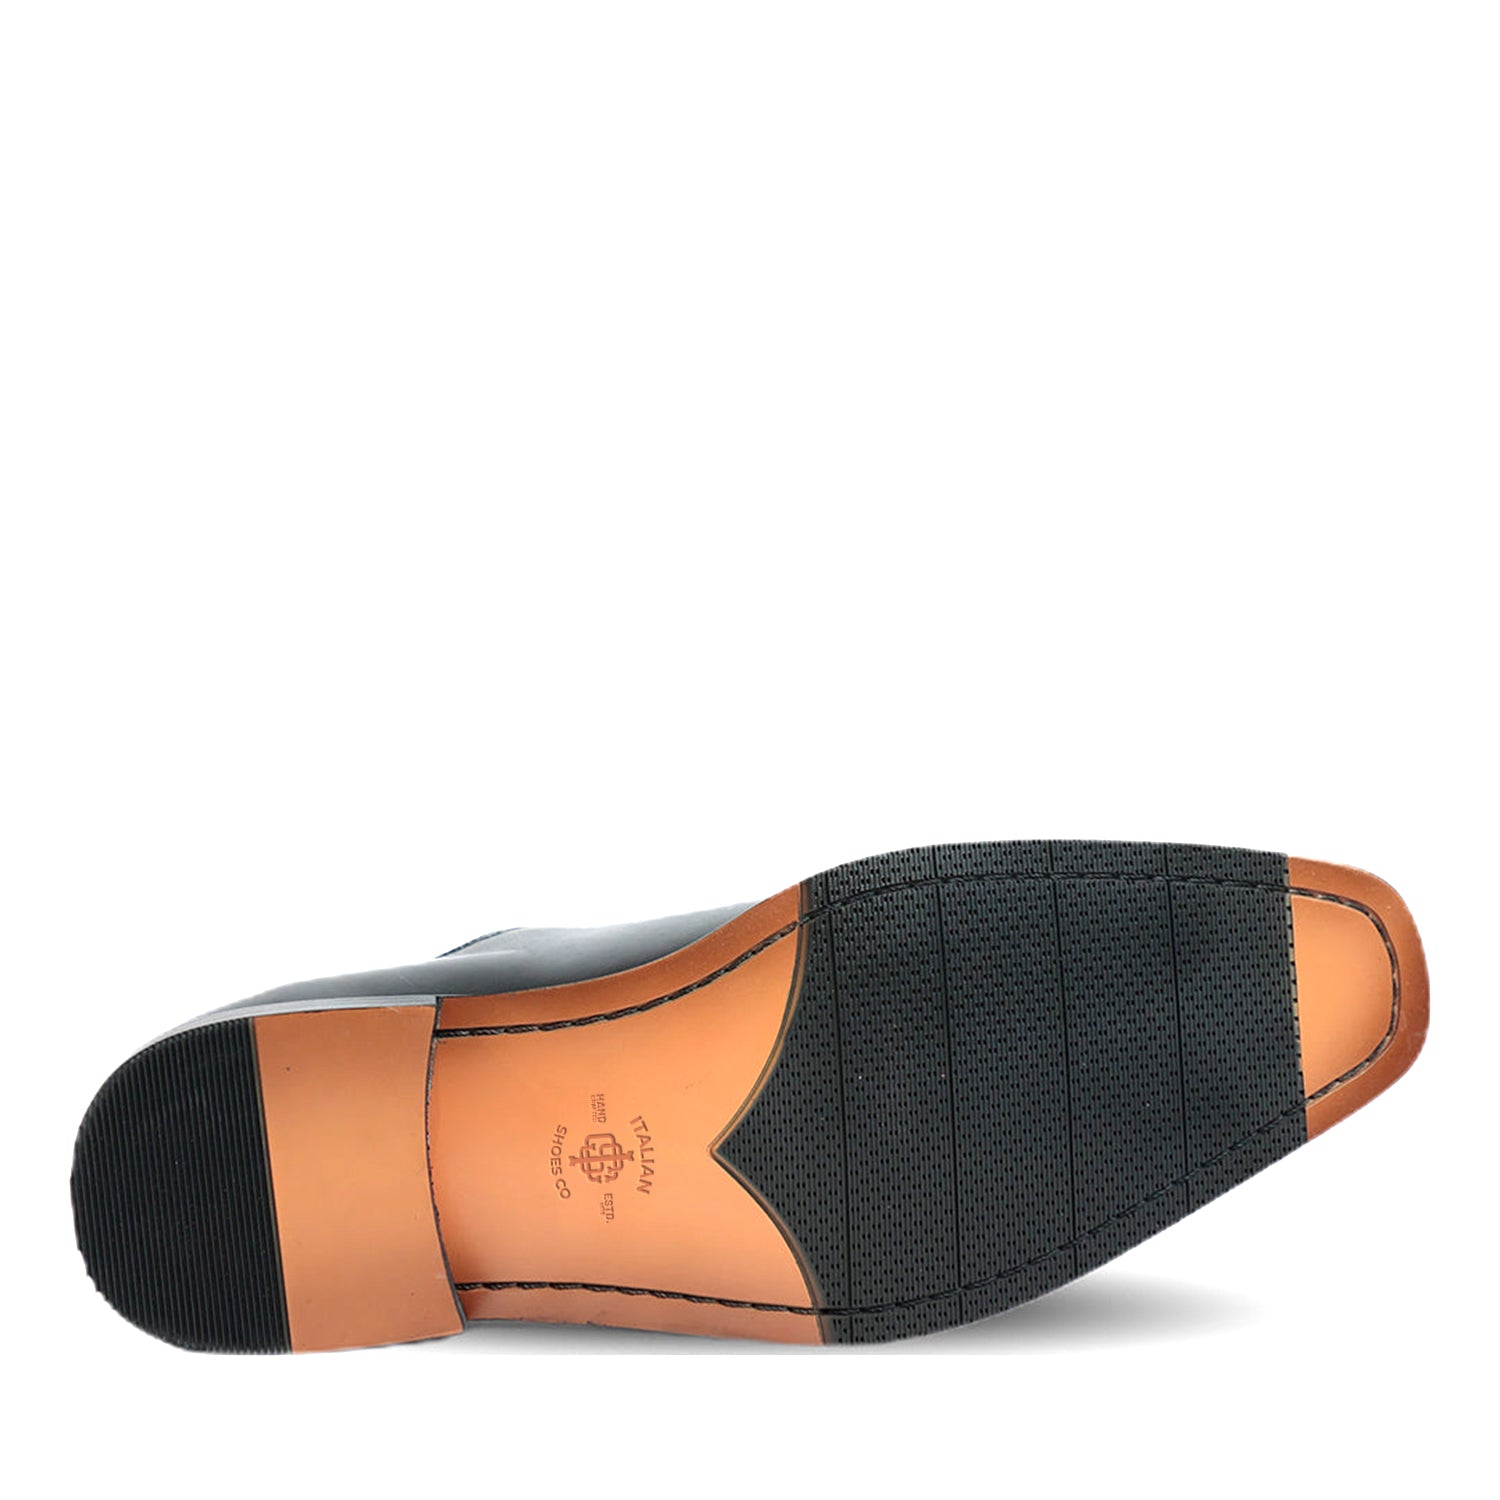 Selton Black Loafer Shoes